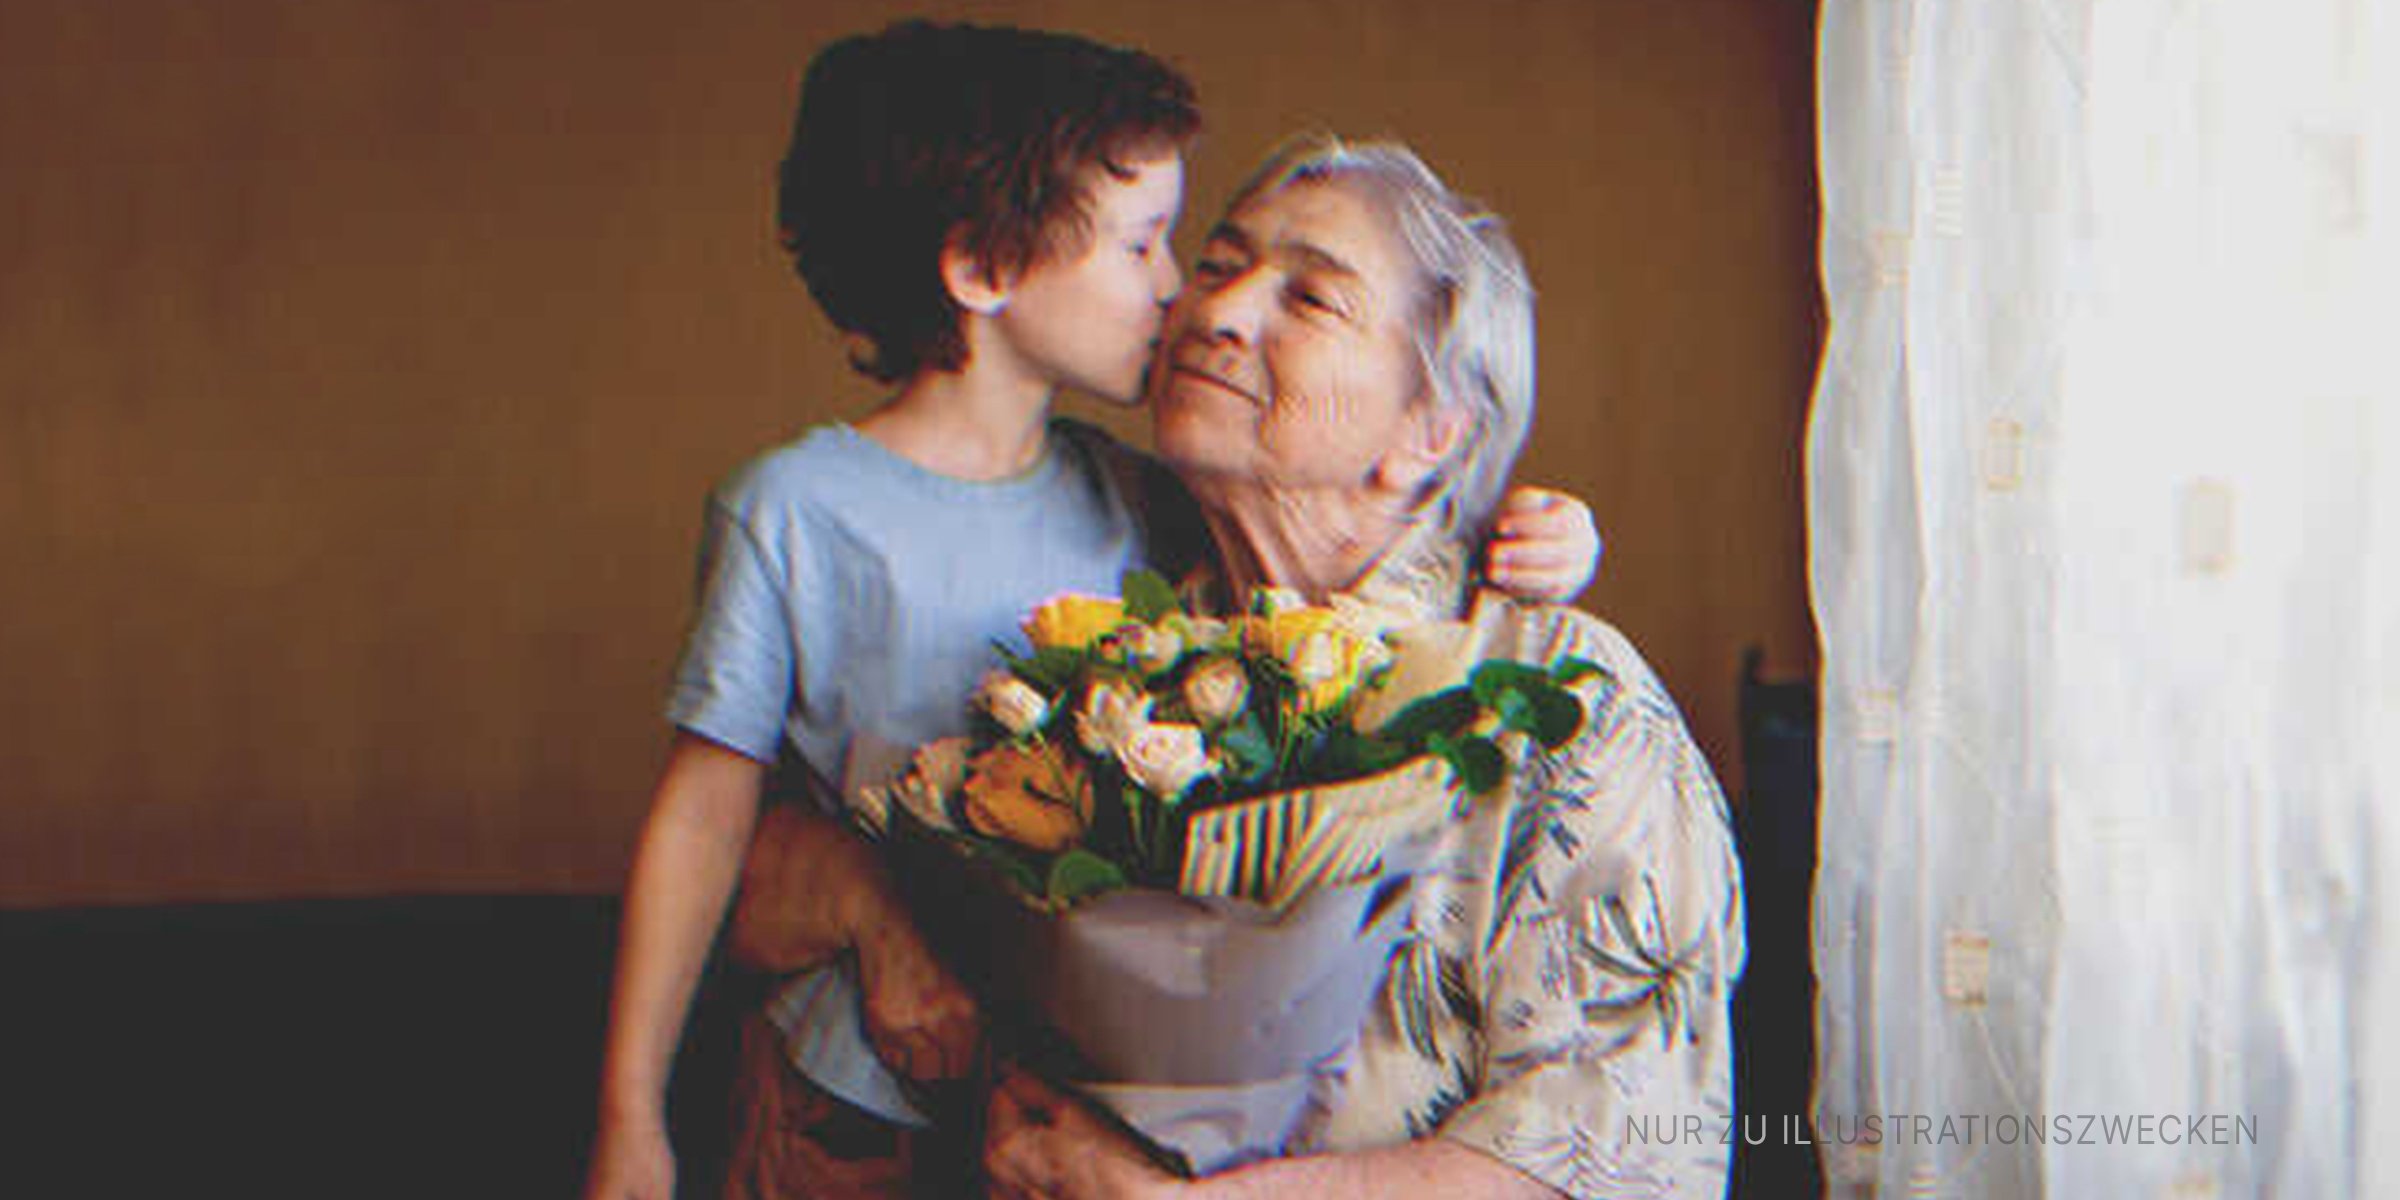 Oma mit ihrem Enkel | Quelle: Shutterstock